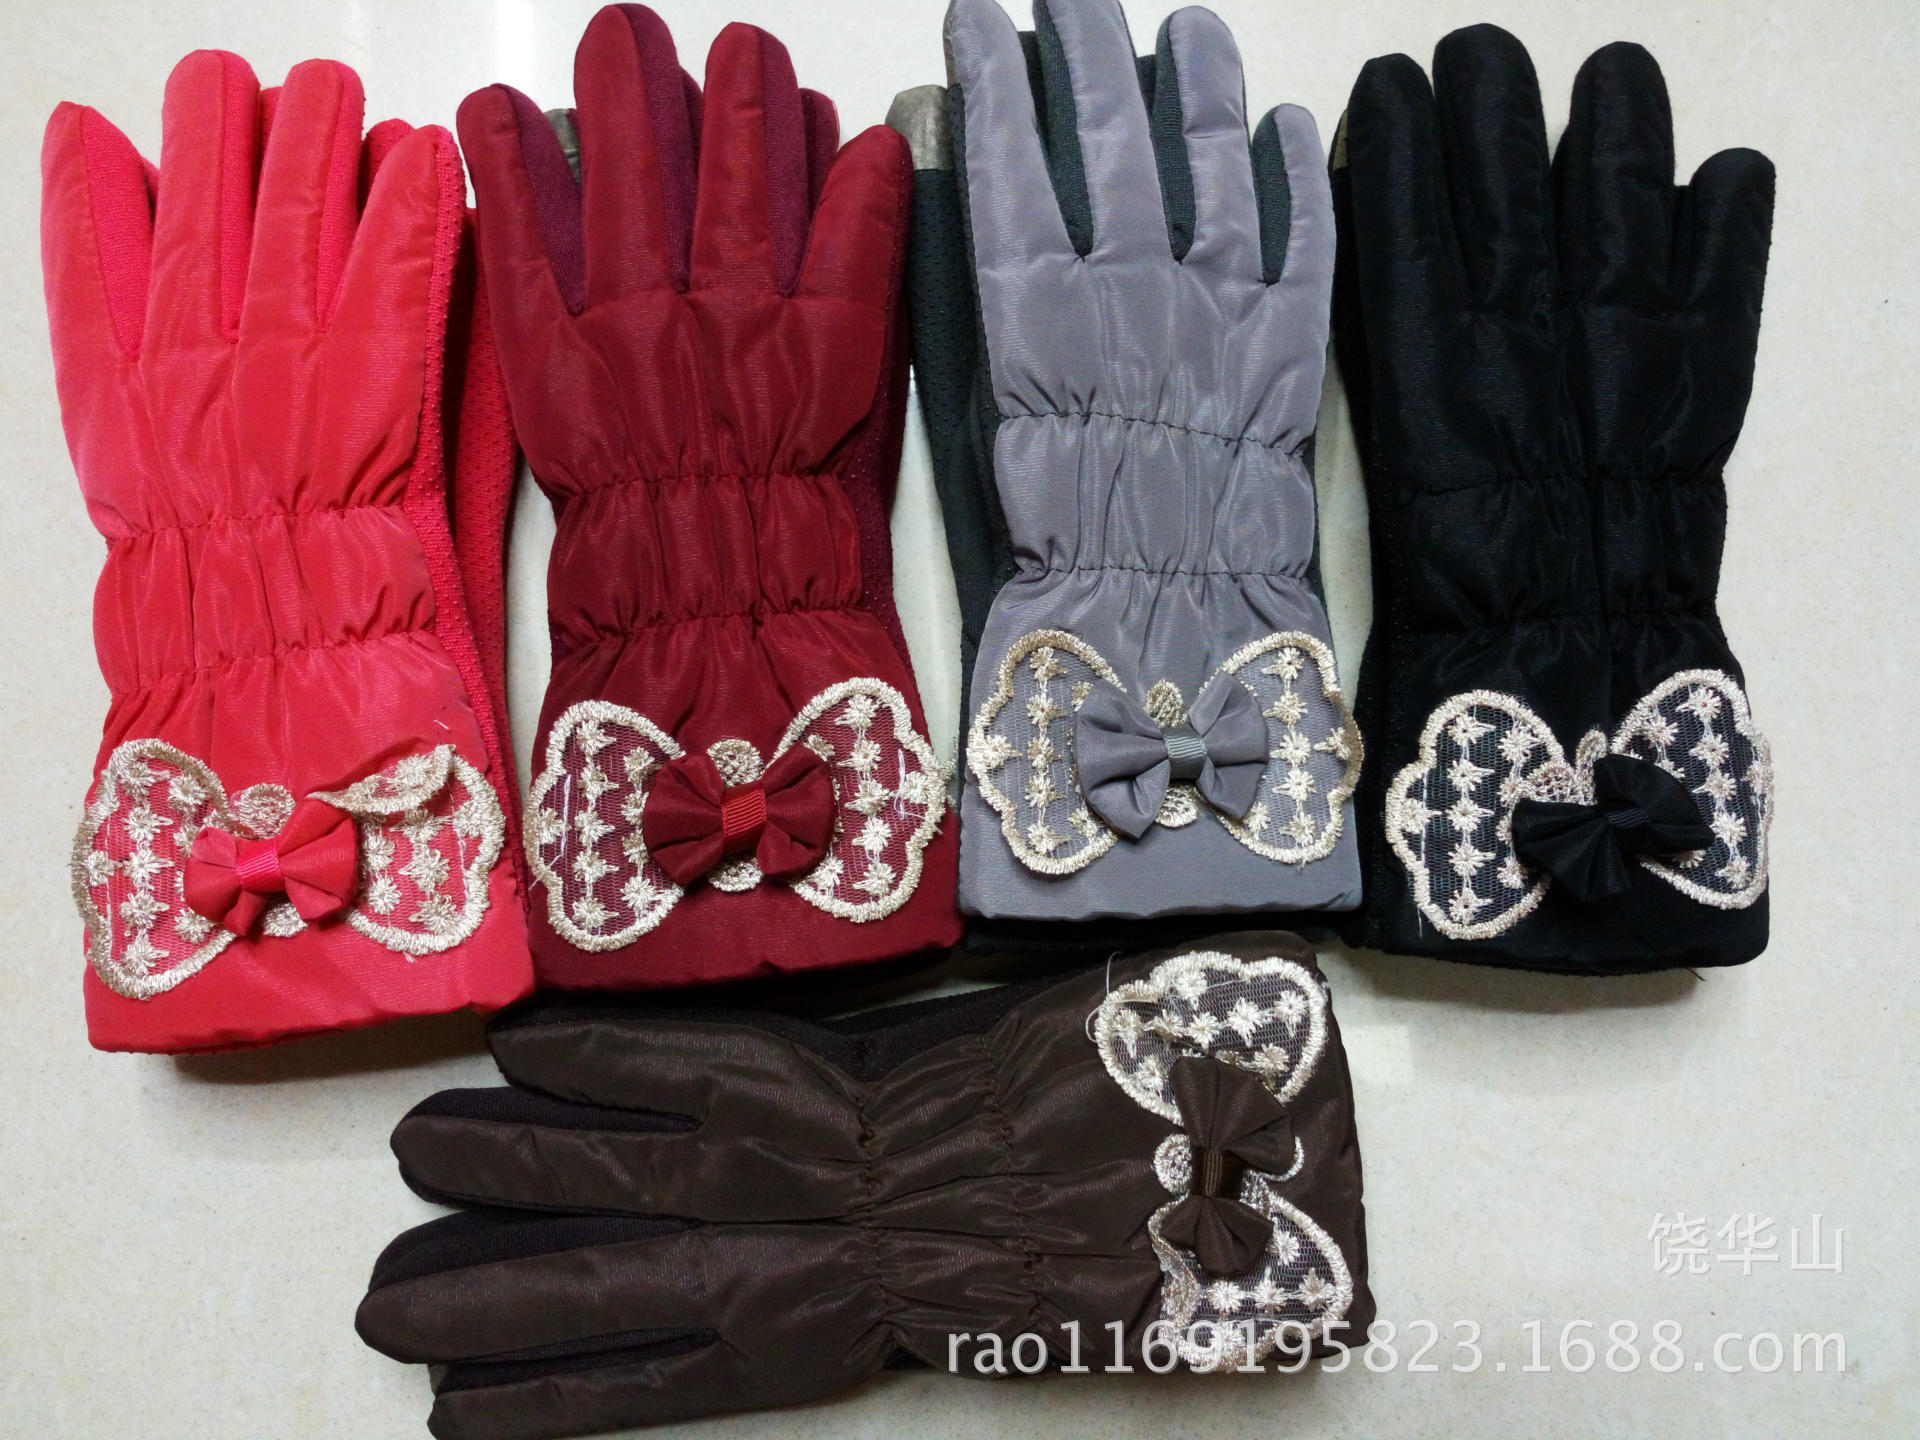 2015 winter warm gloves IMG_20150809_122232